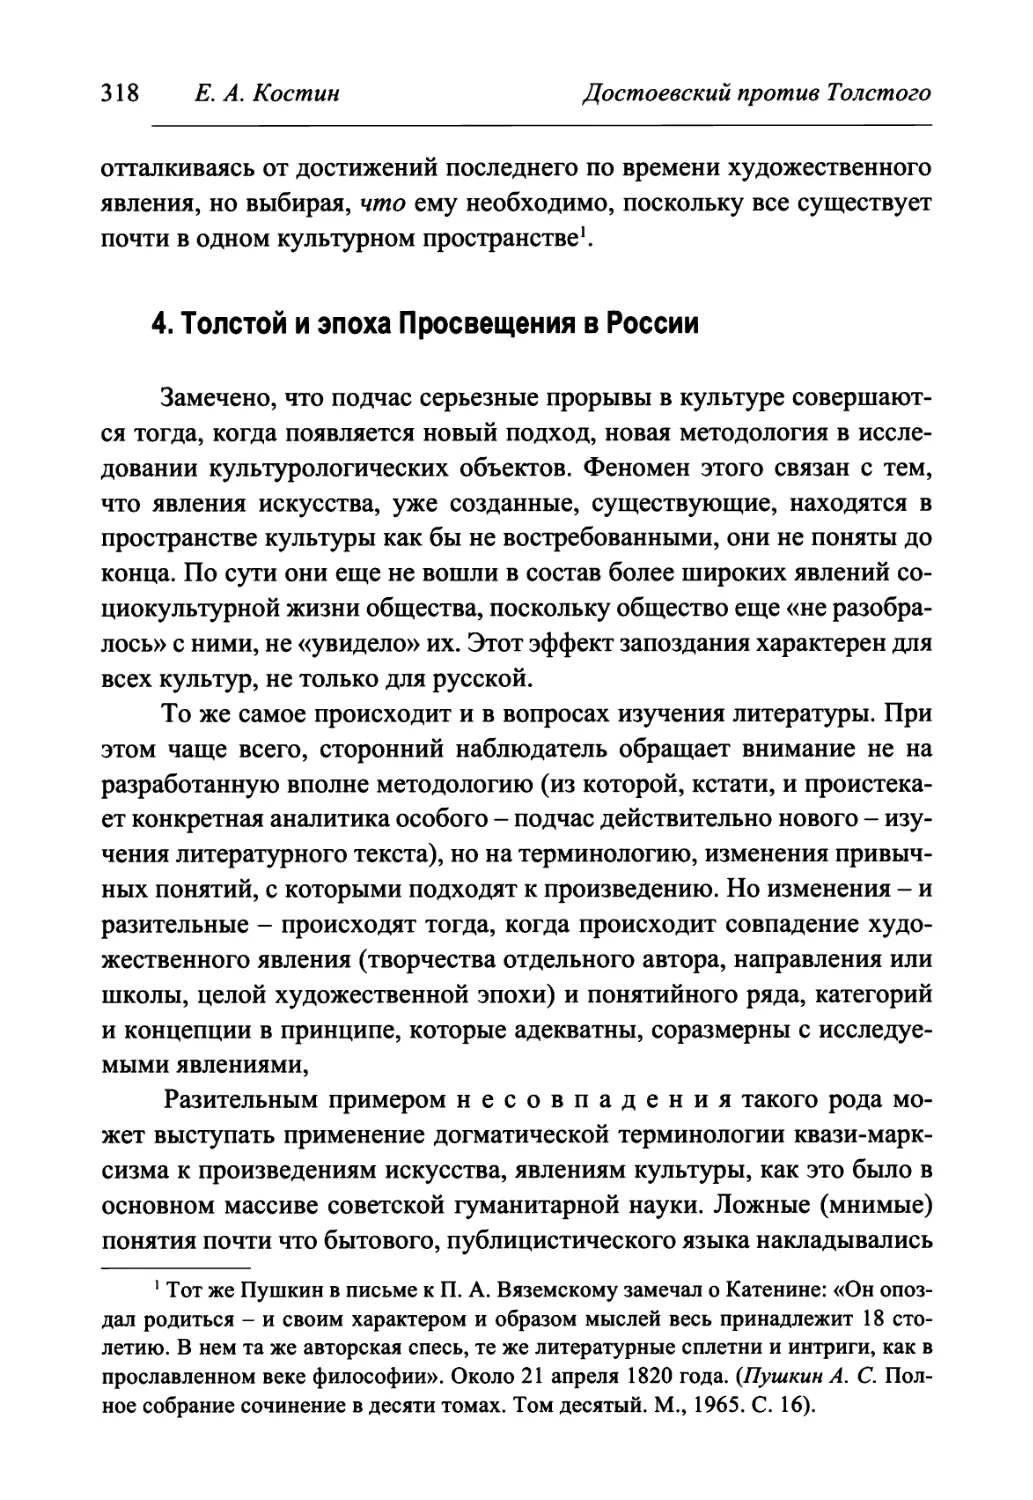 4. Толстой и эпоха Просвещения в России